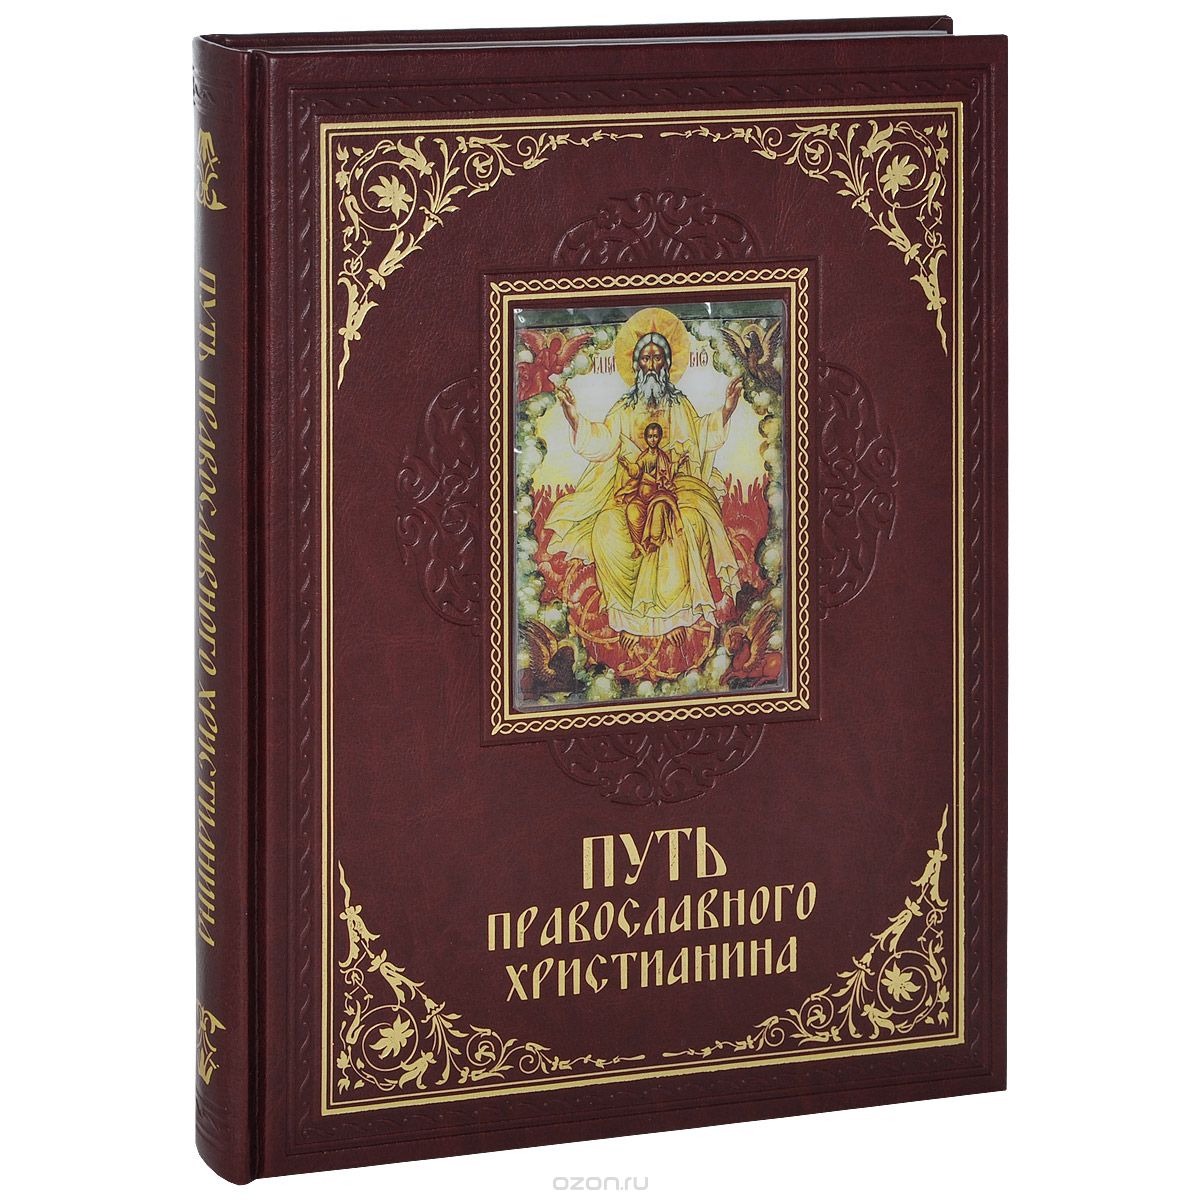 Скачать книгу "Путь православного христианина (подарочное издание), Елена Прокофьева"